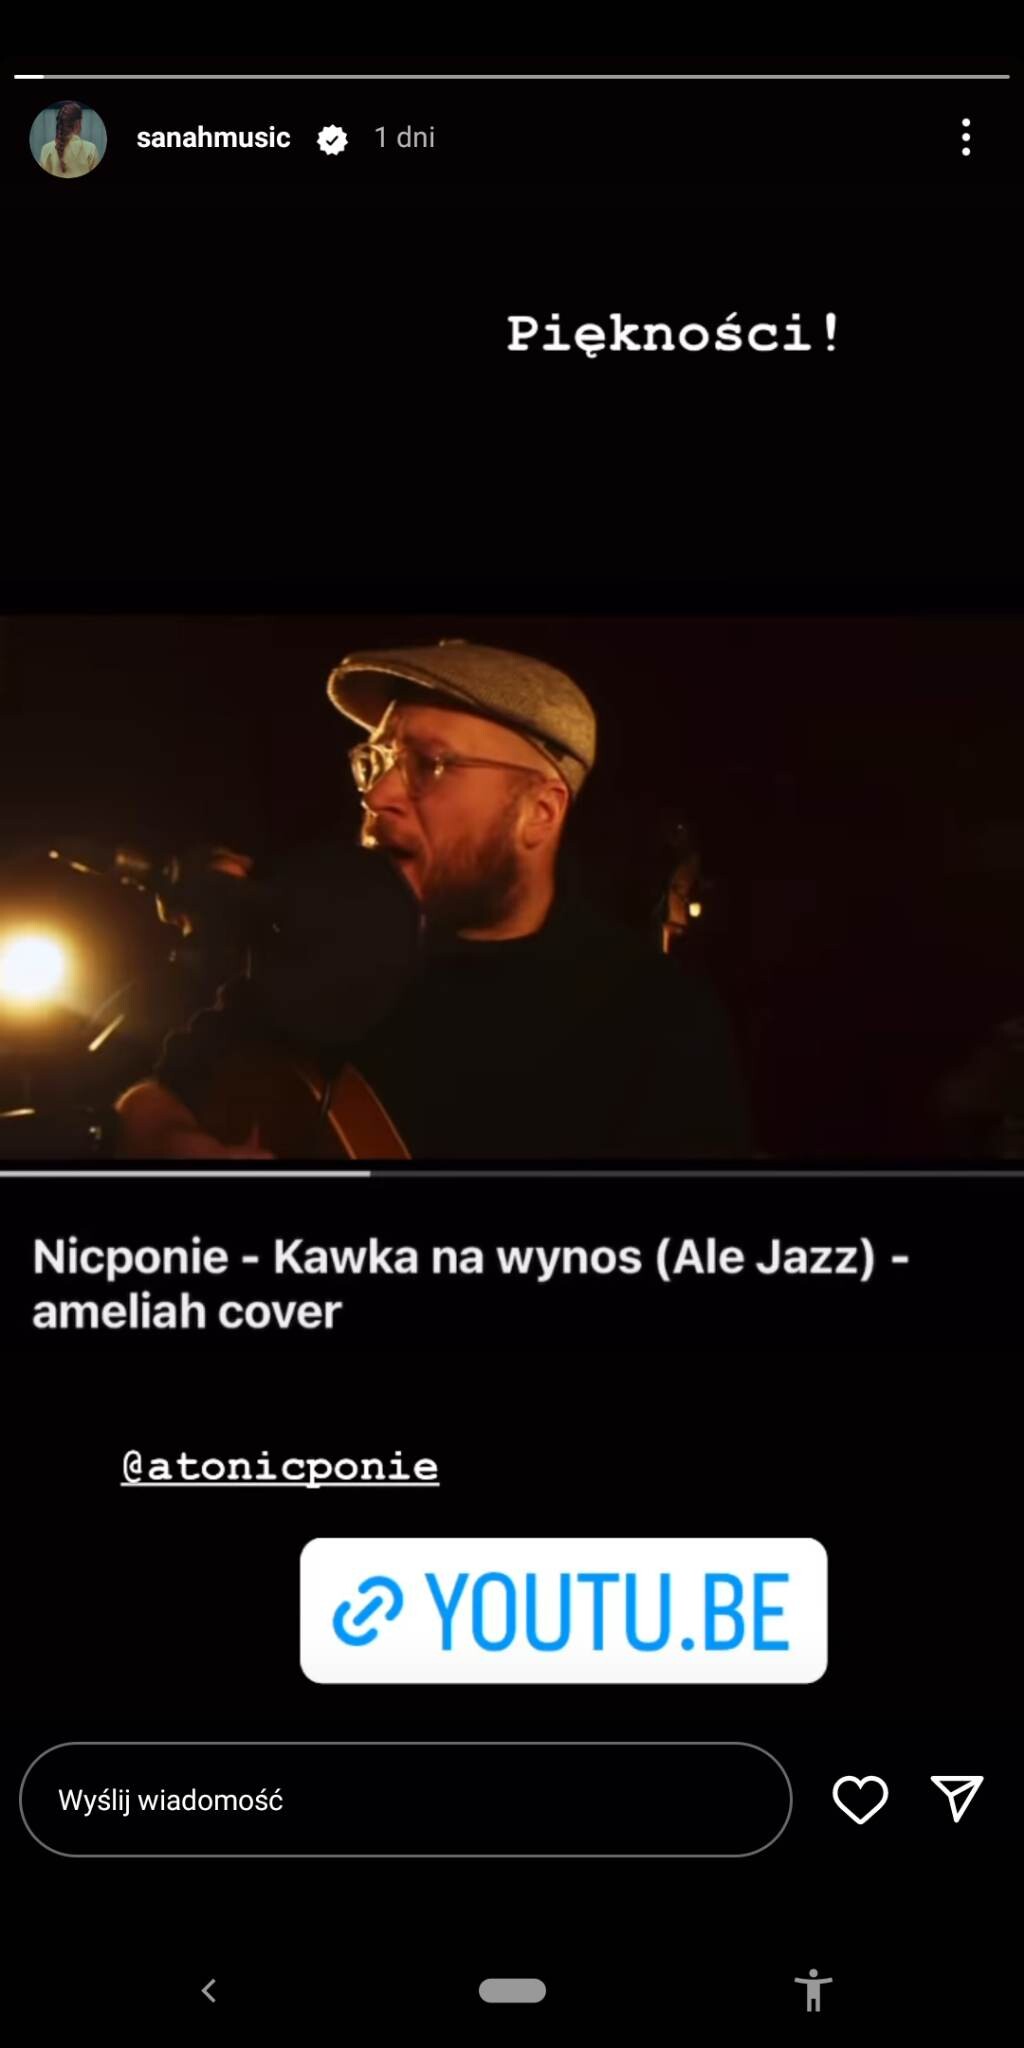 sanah o coverze "Ale jazz" zespou Nicponie